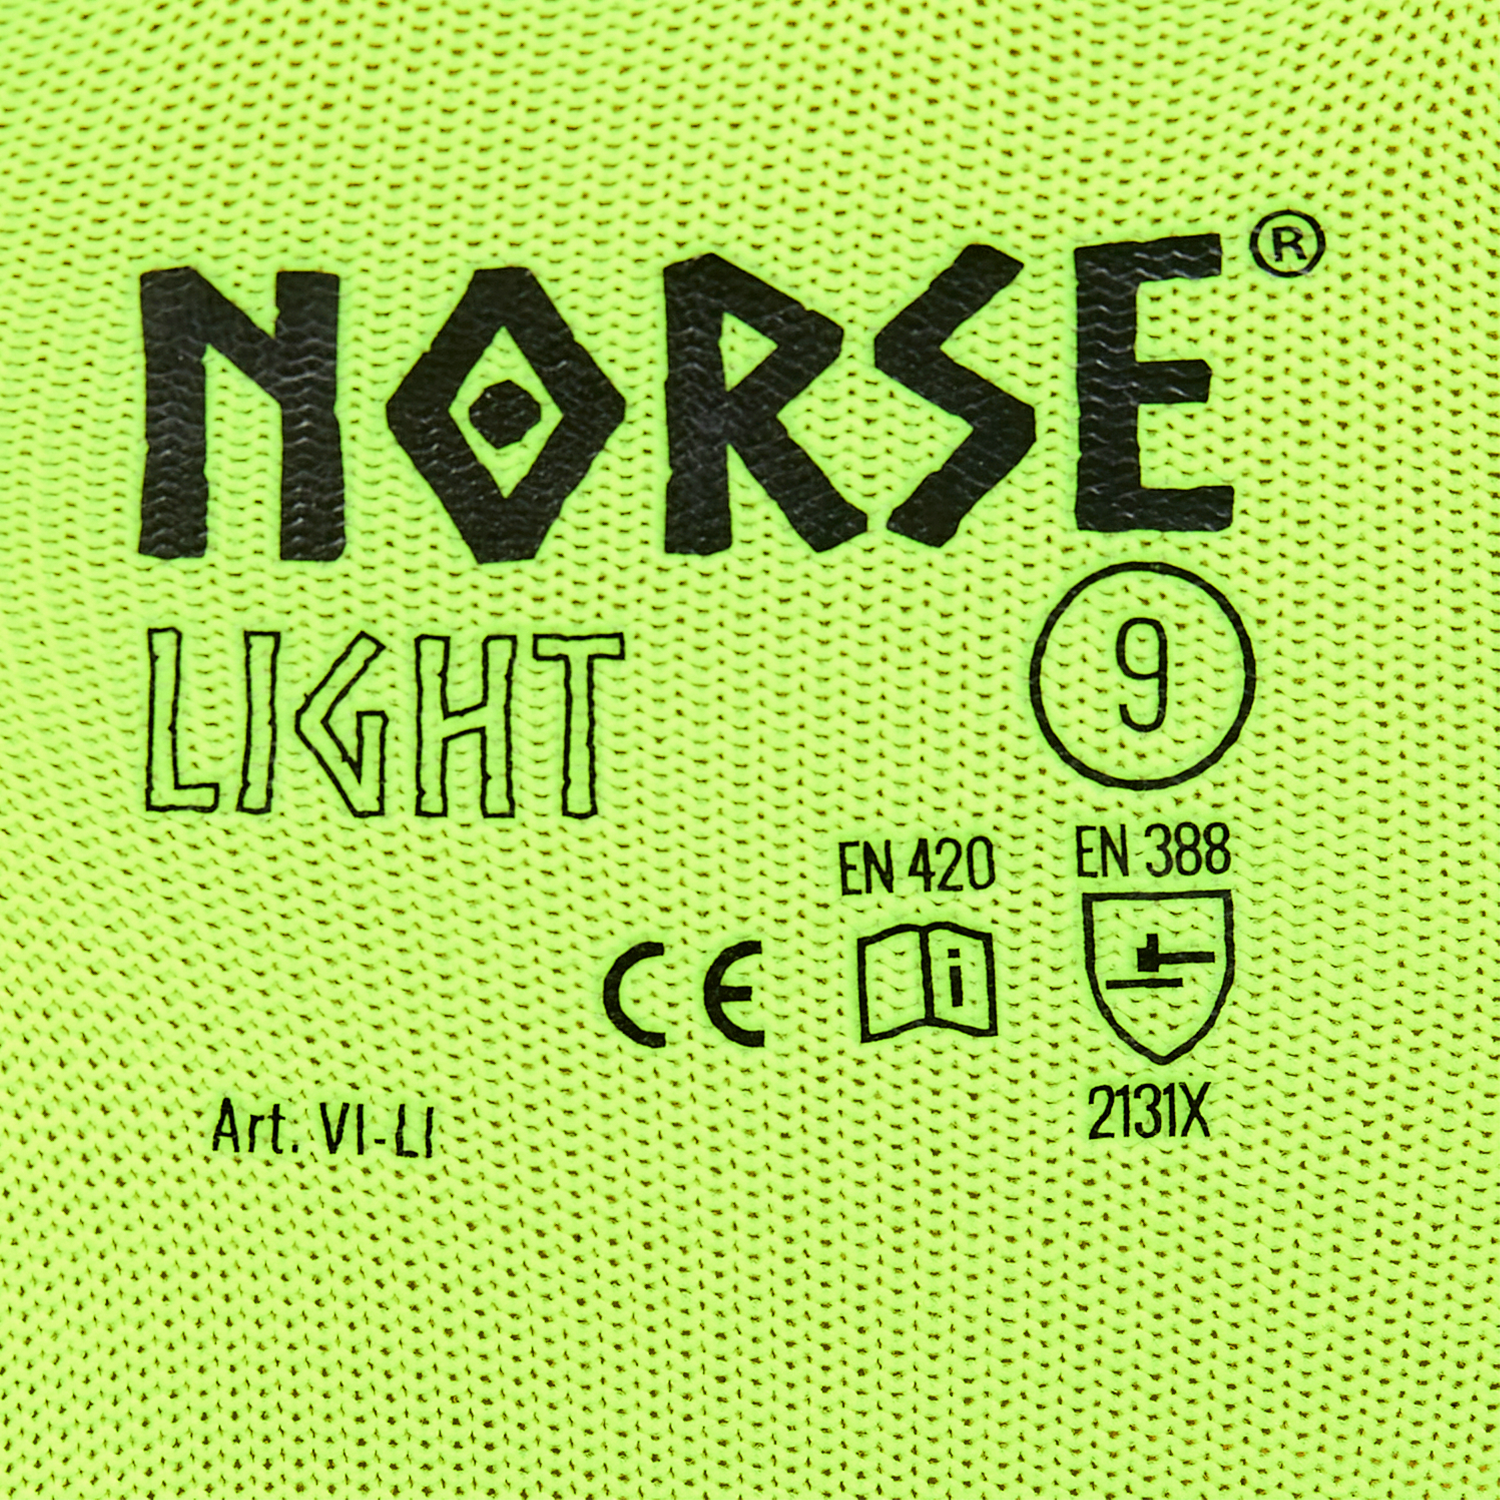 NORSE Light assembly käsineet koko 9